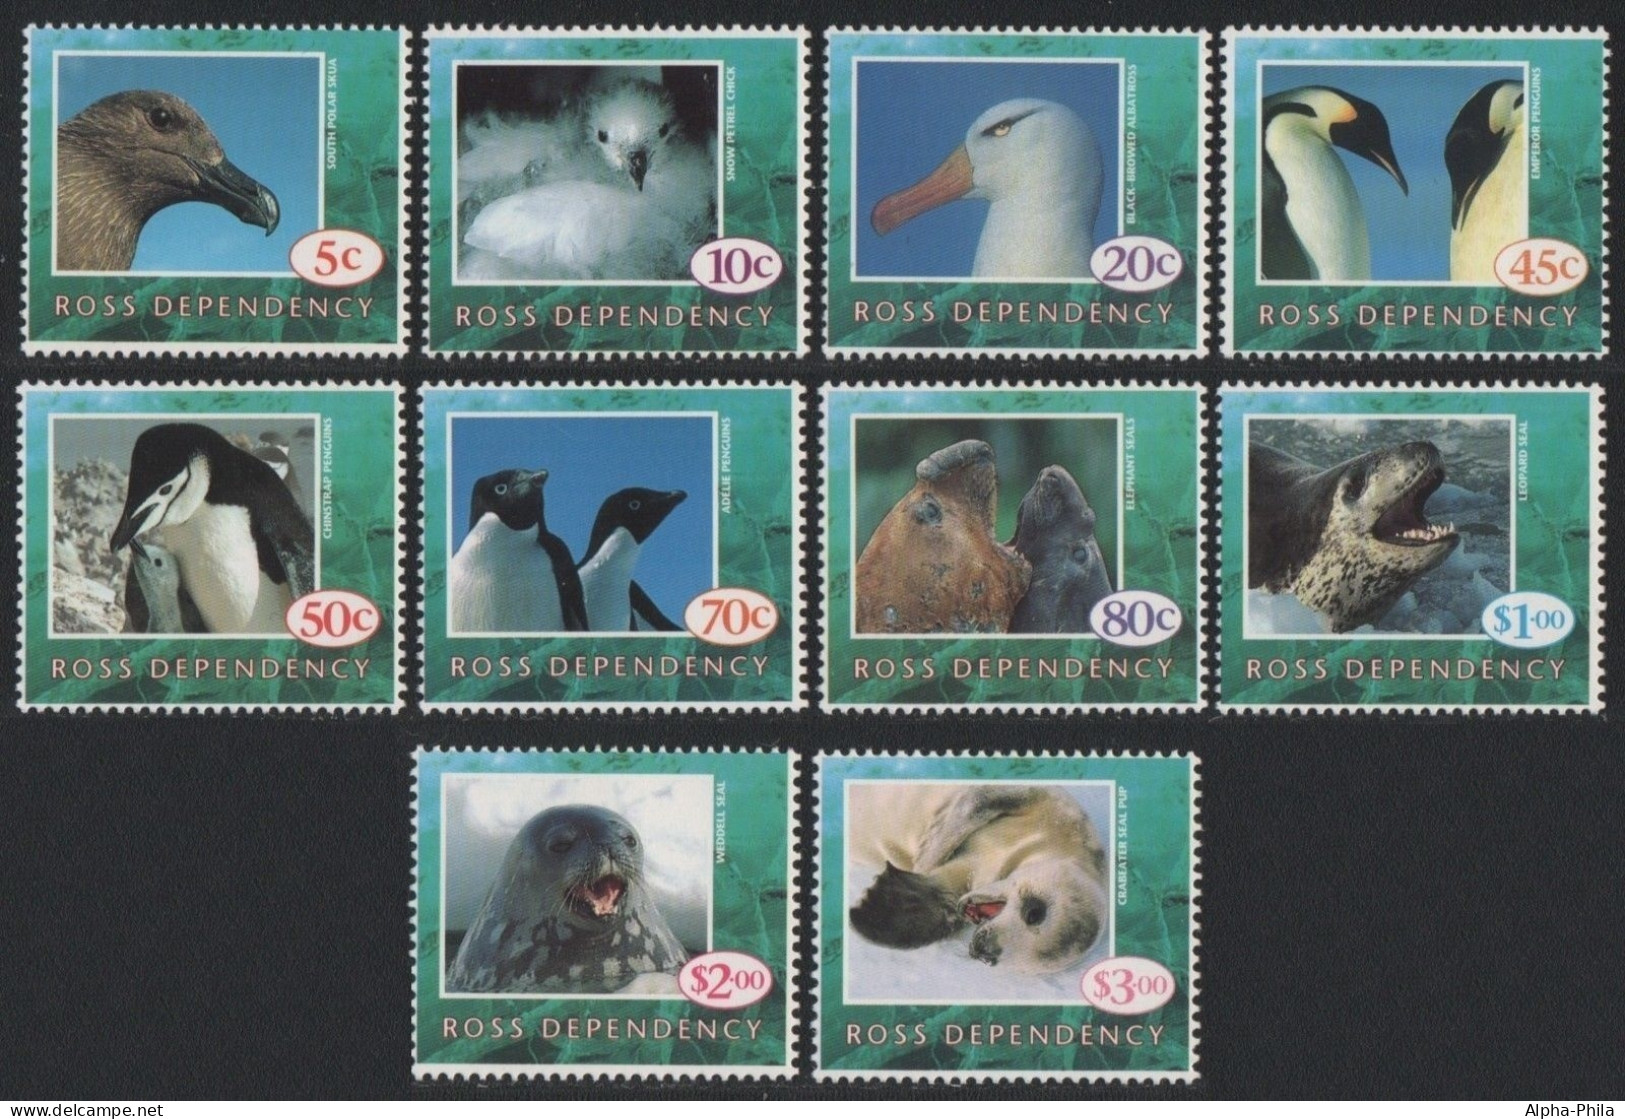 Ross-Gebiet 1994 - Mi-Nr. 21-30 ** - MNH - Vögel, Robben / Birds, Seals - Unused Stamps